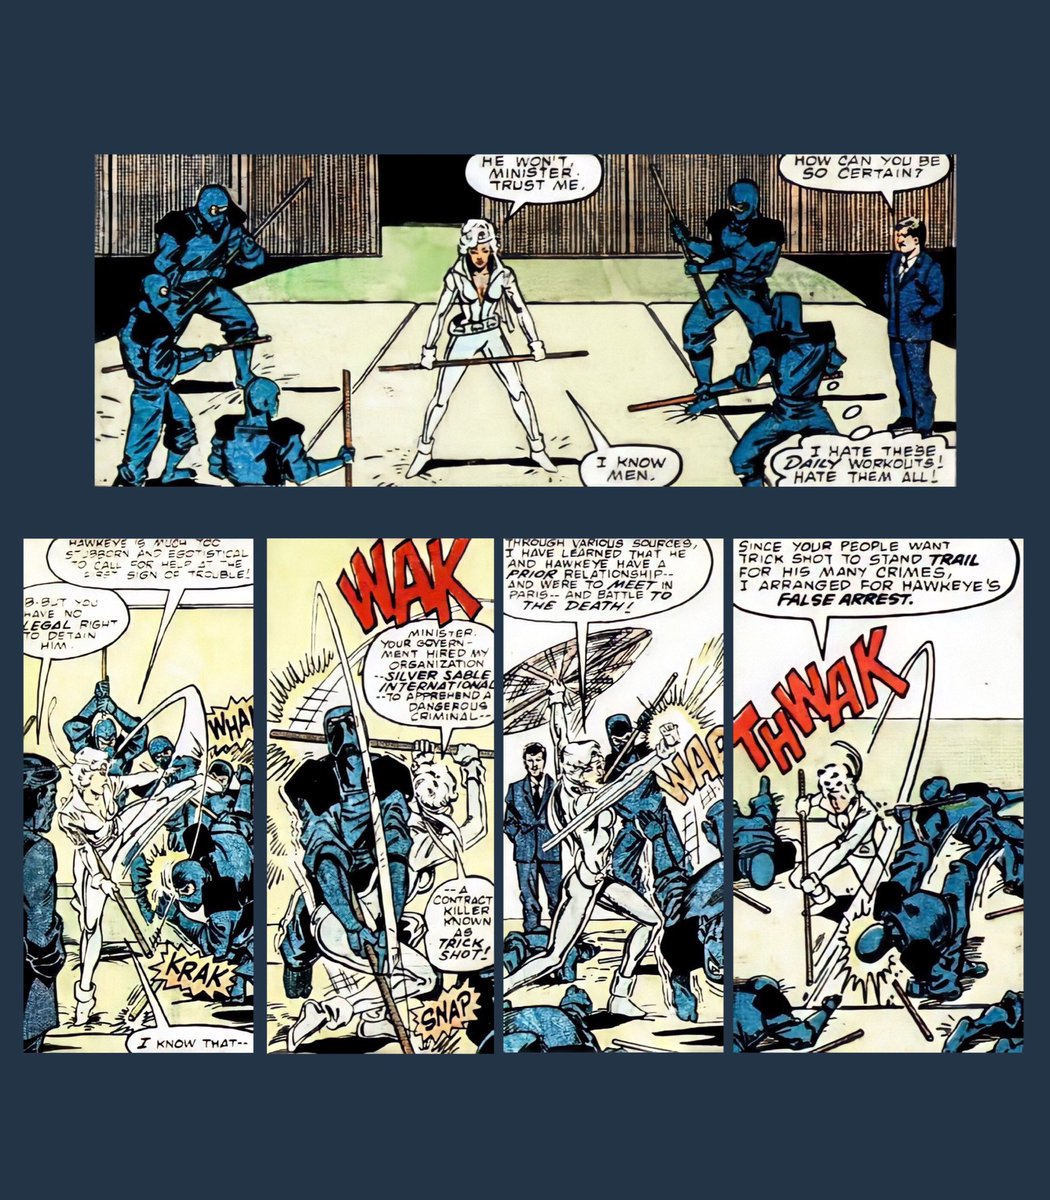 More ninjas. She casually beats ninjas in training.- Solo Avengers (1987) #4